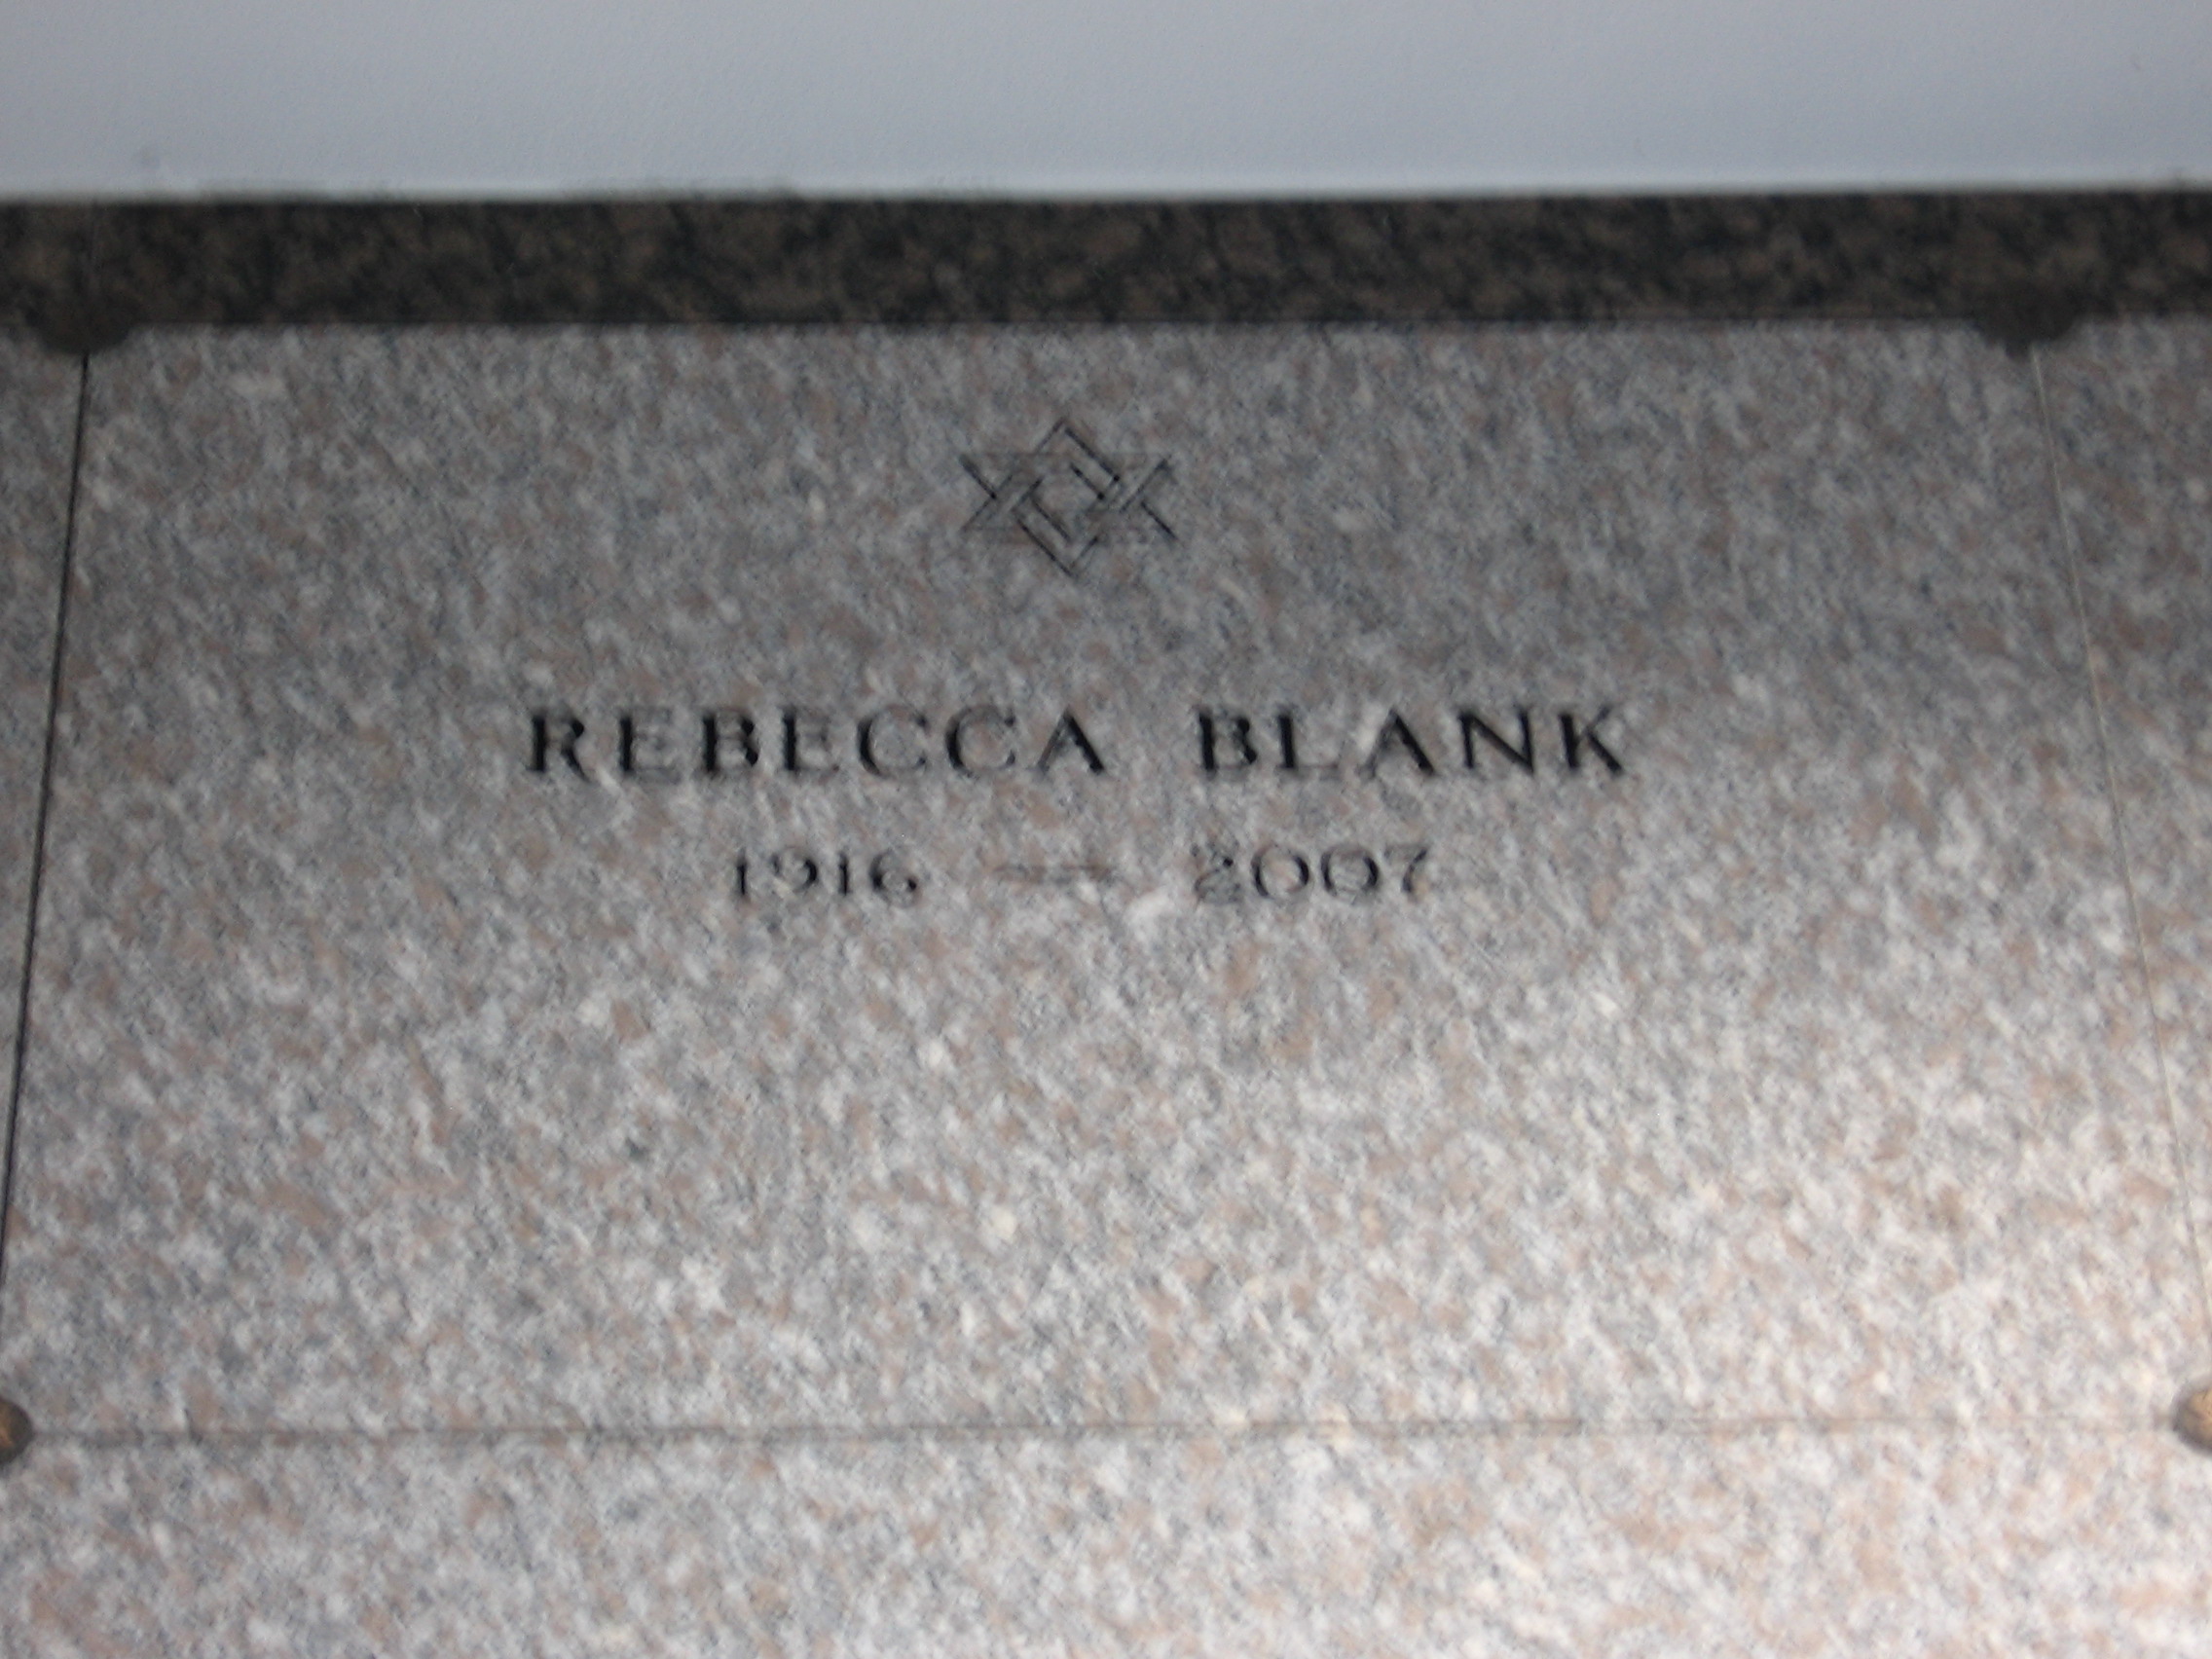 Rebecca Blank